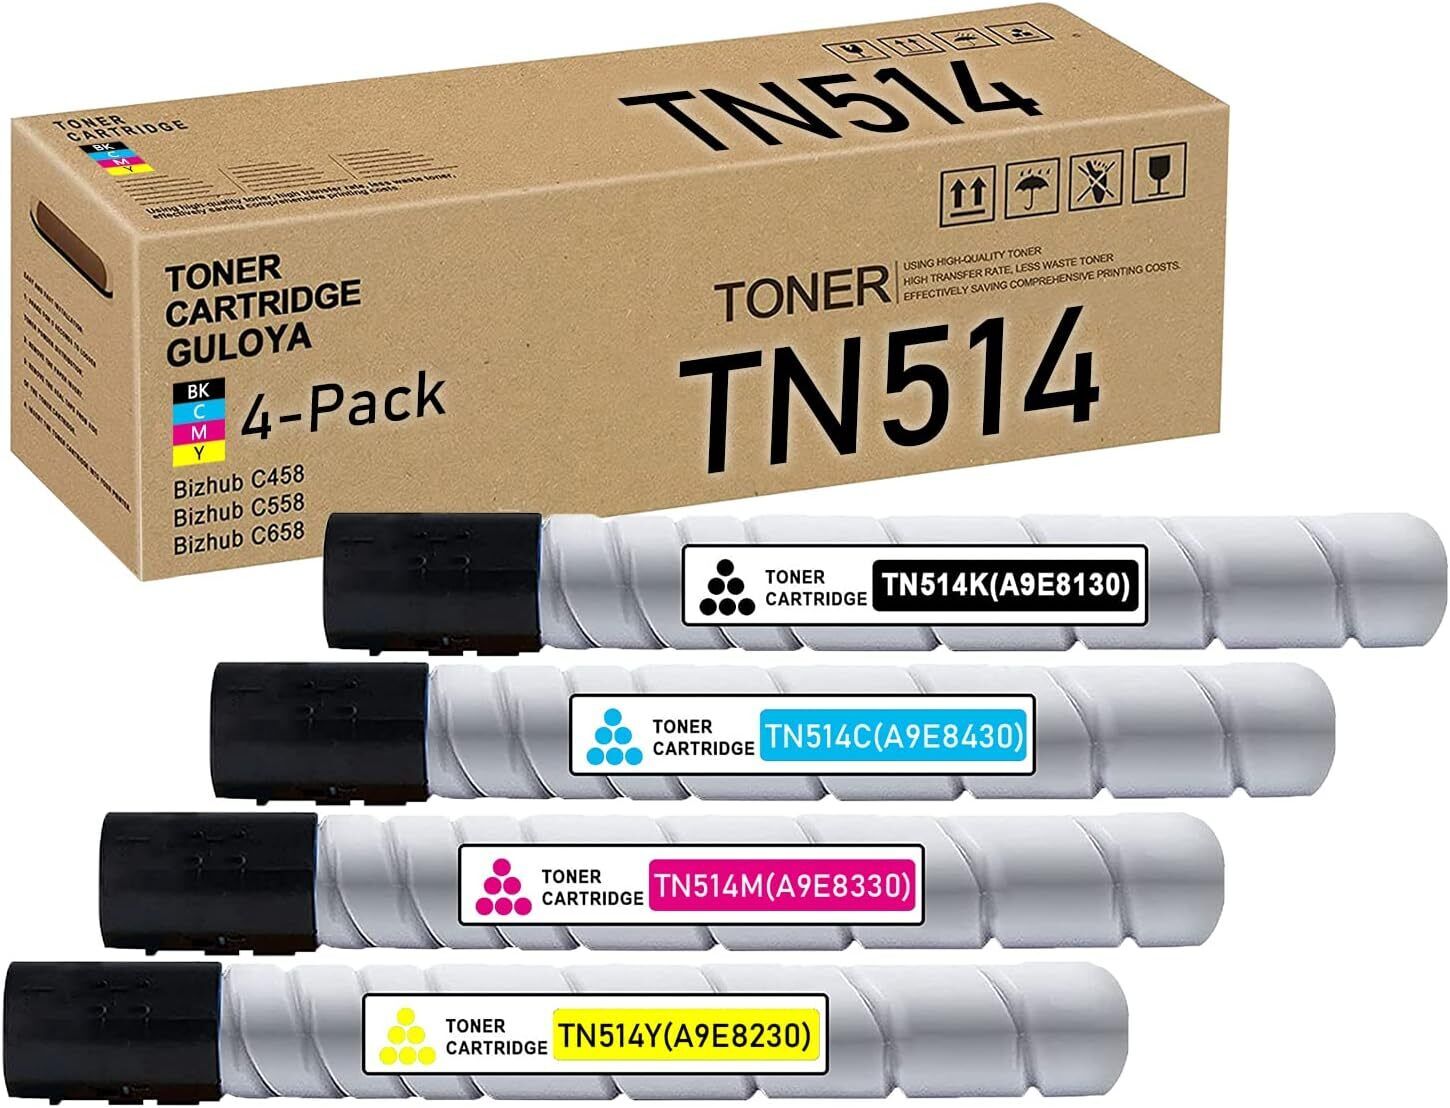 TN514 Toner Cartridge Replacement for Konica Minolta C458 C558 C658 1BK/1C/1Y/1M